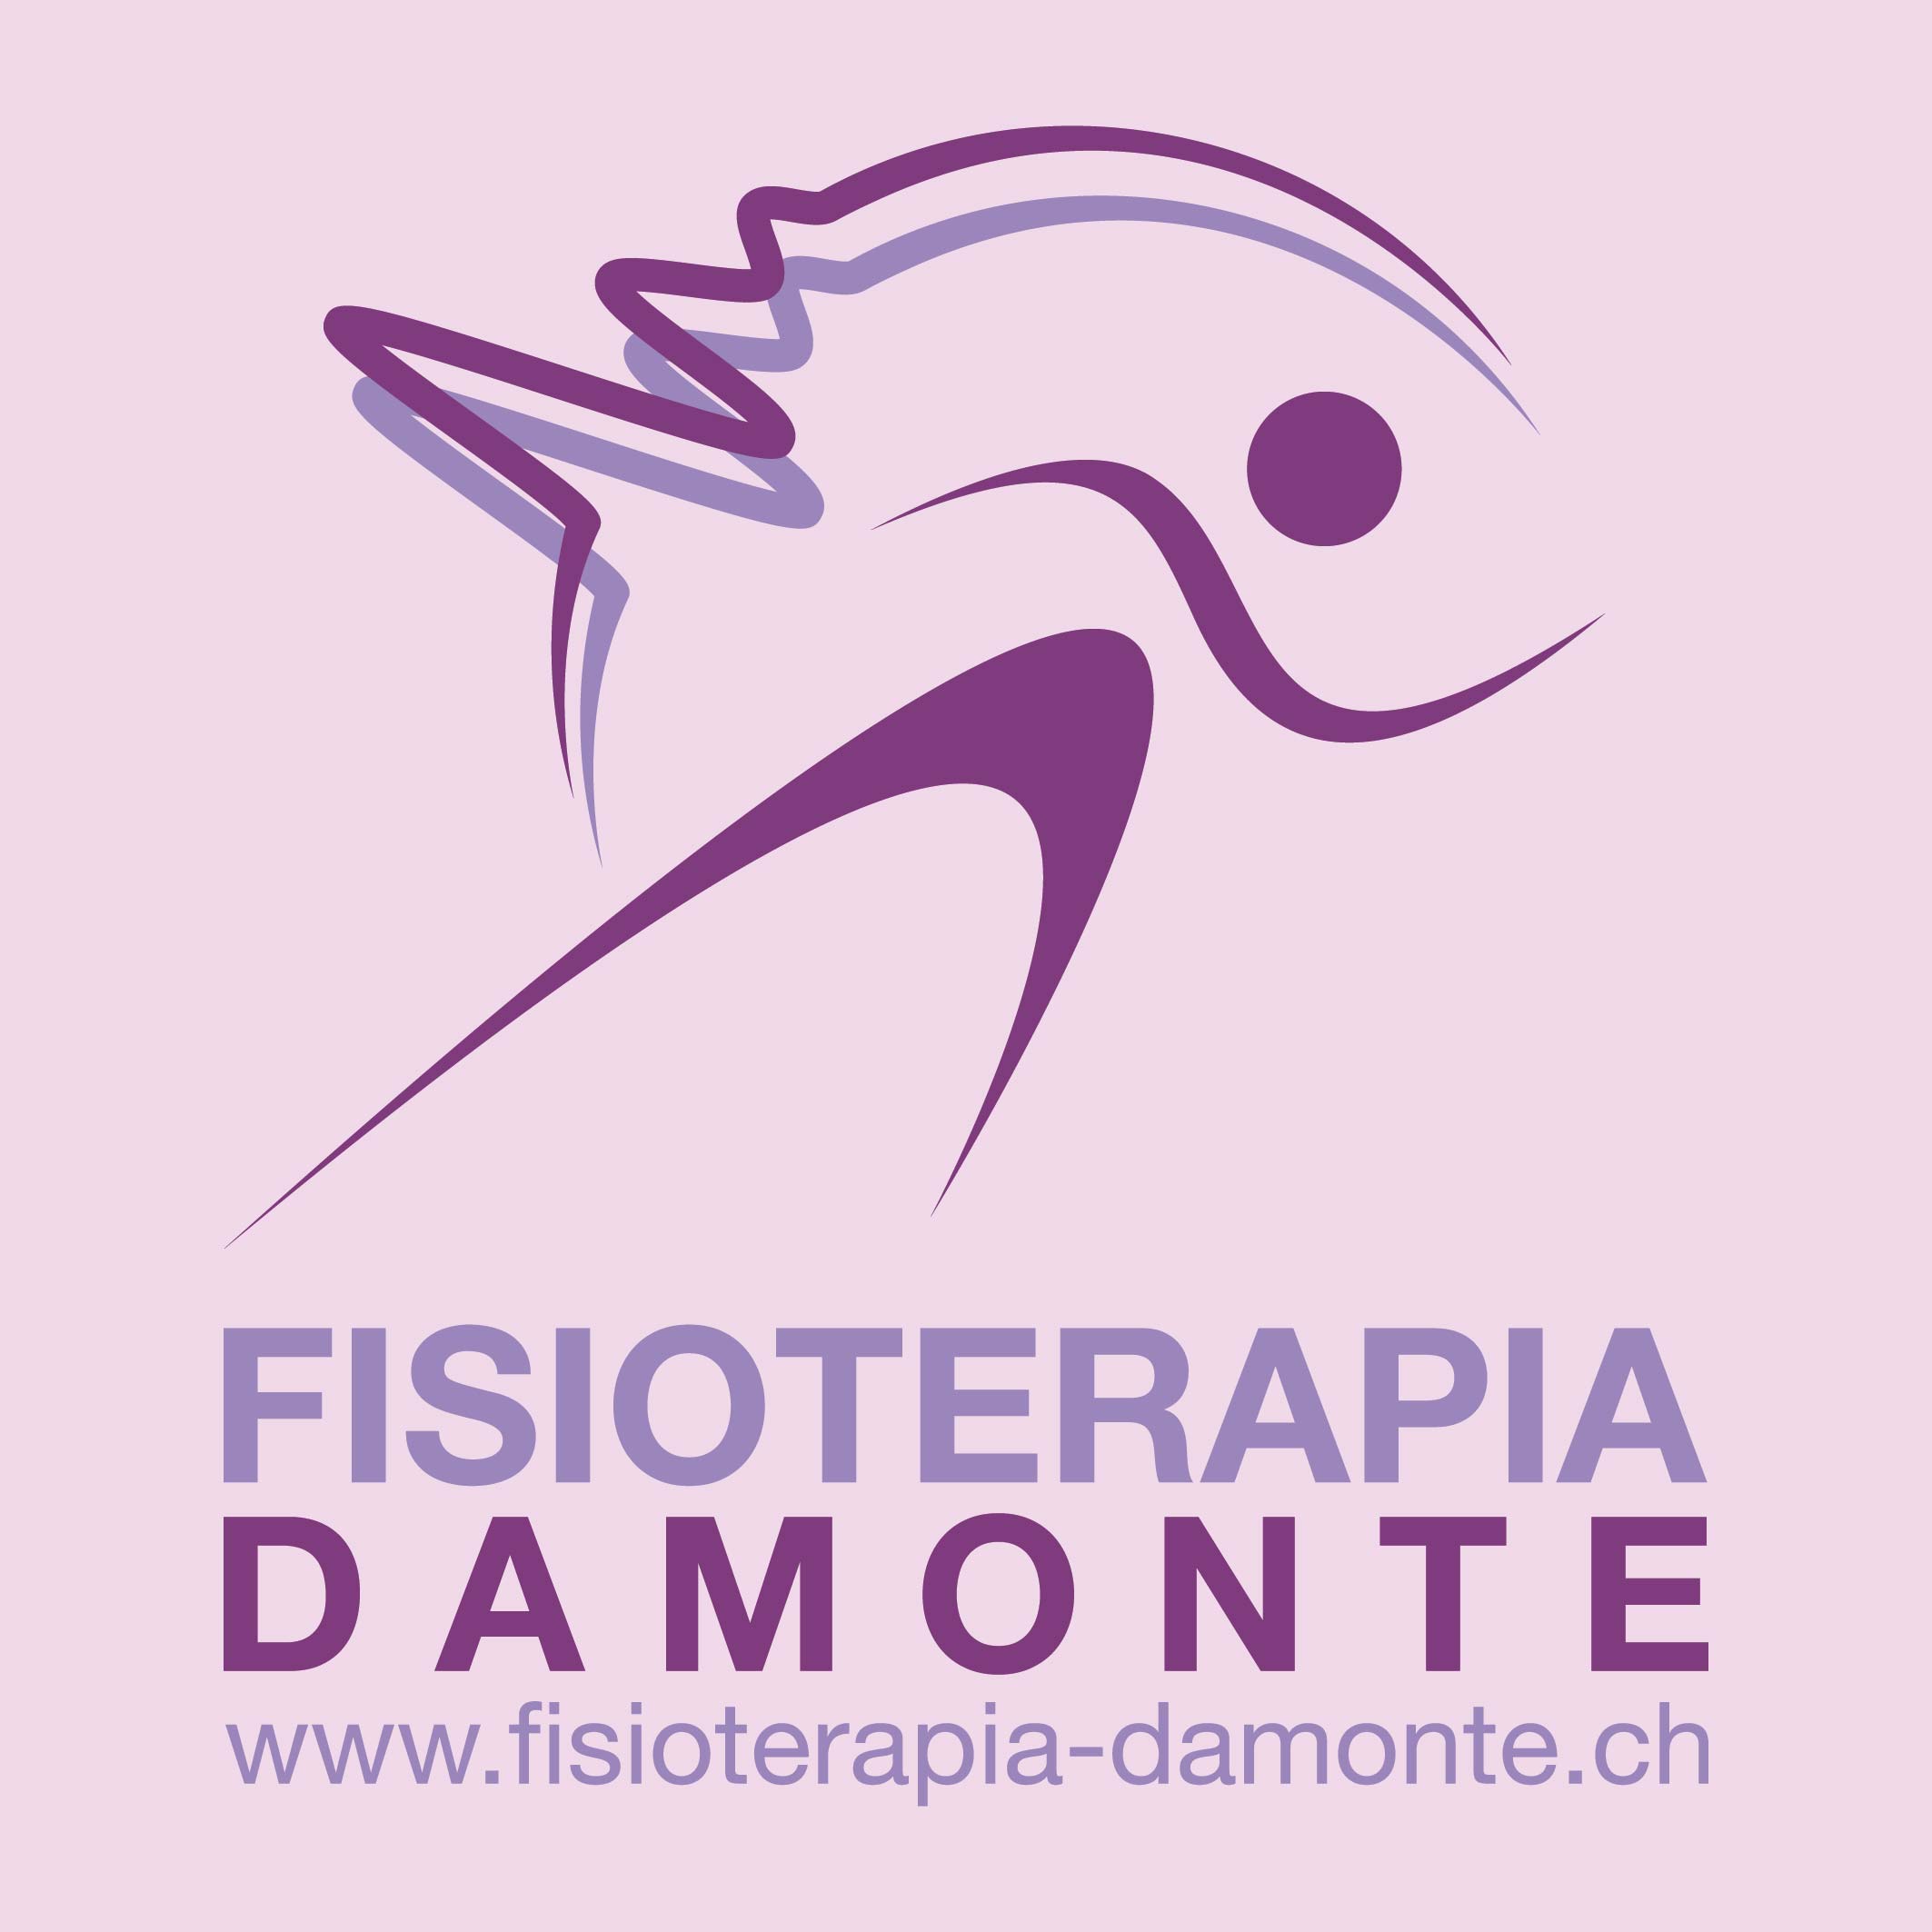 FISIOTERAPIA DAMONTE